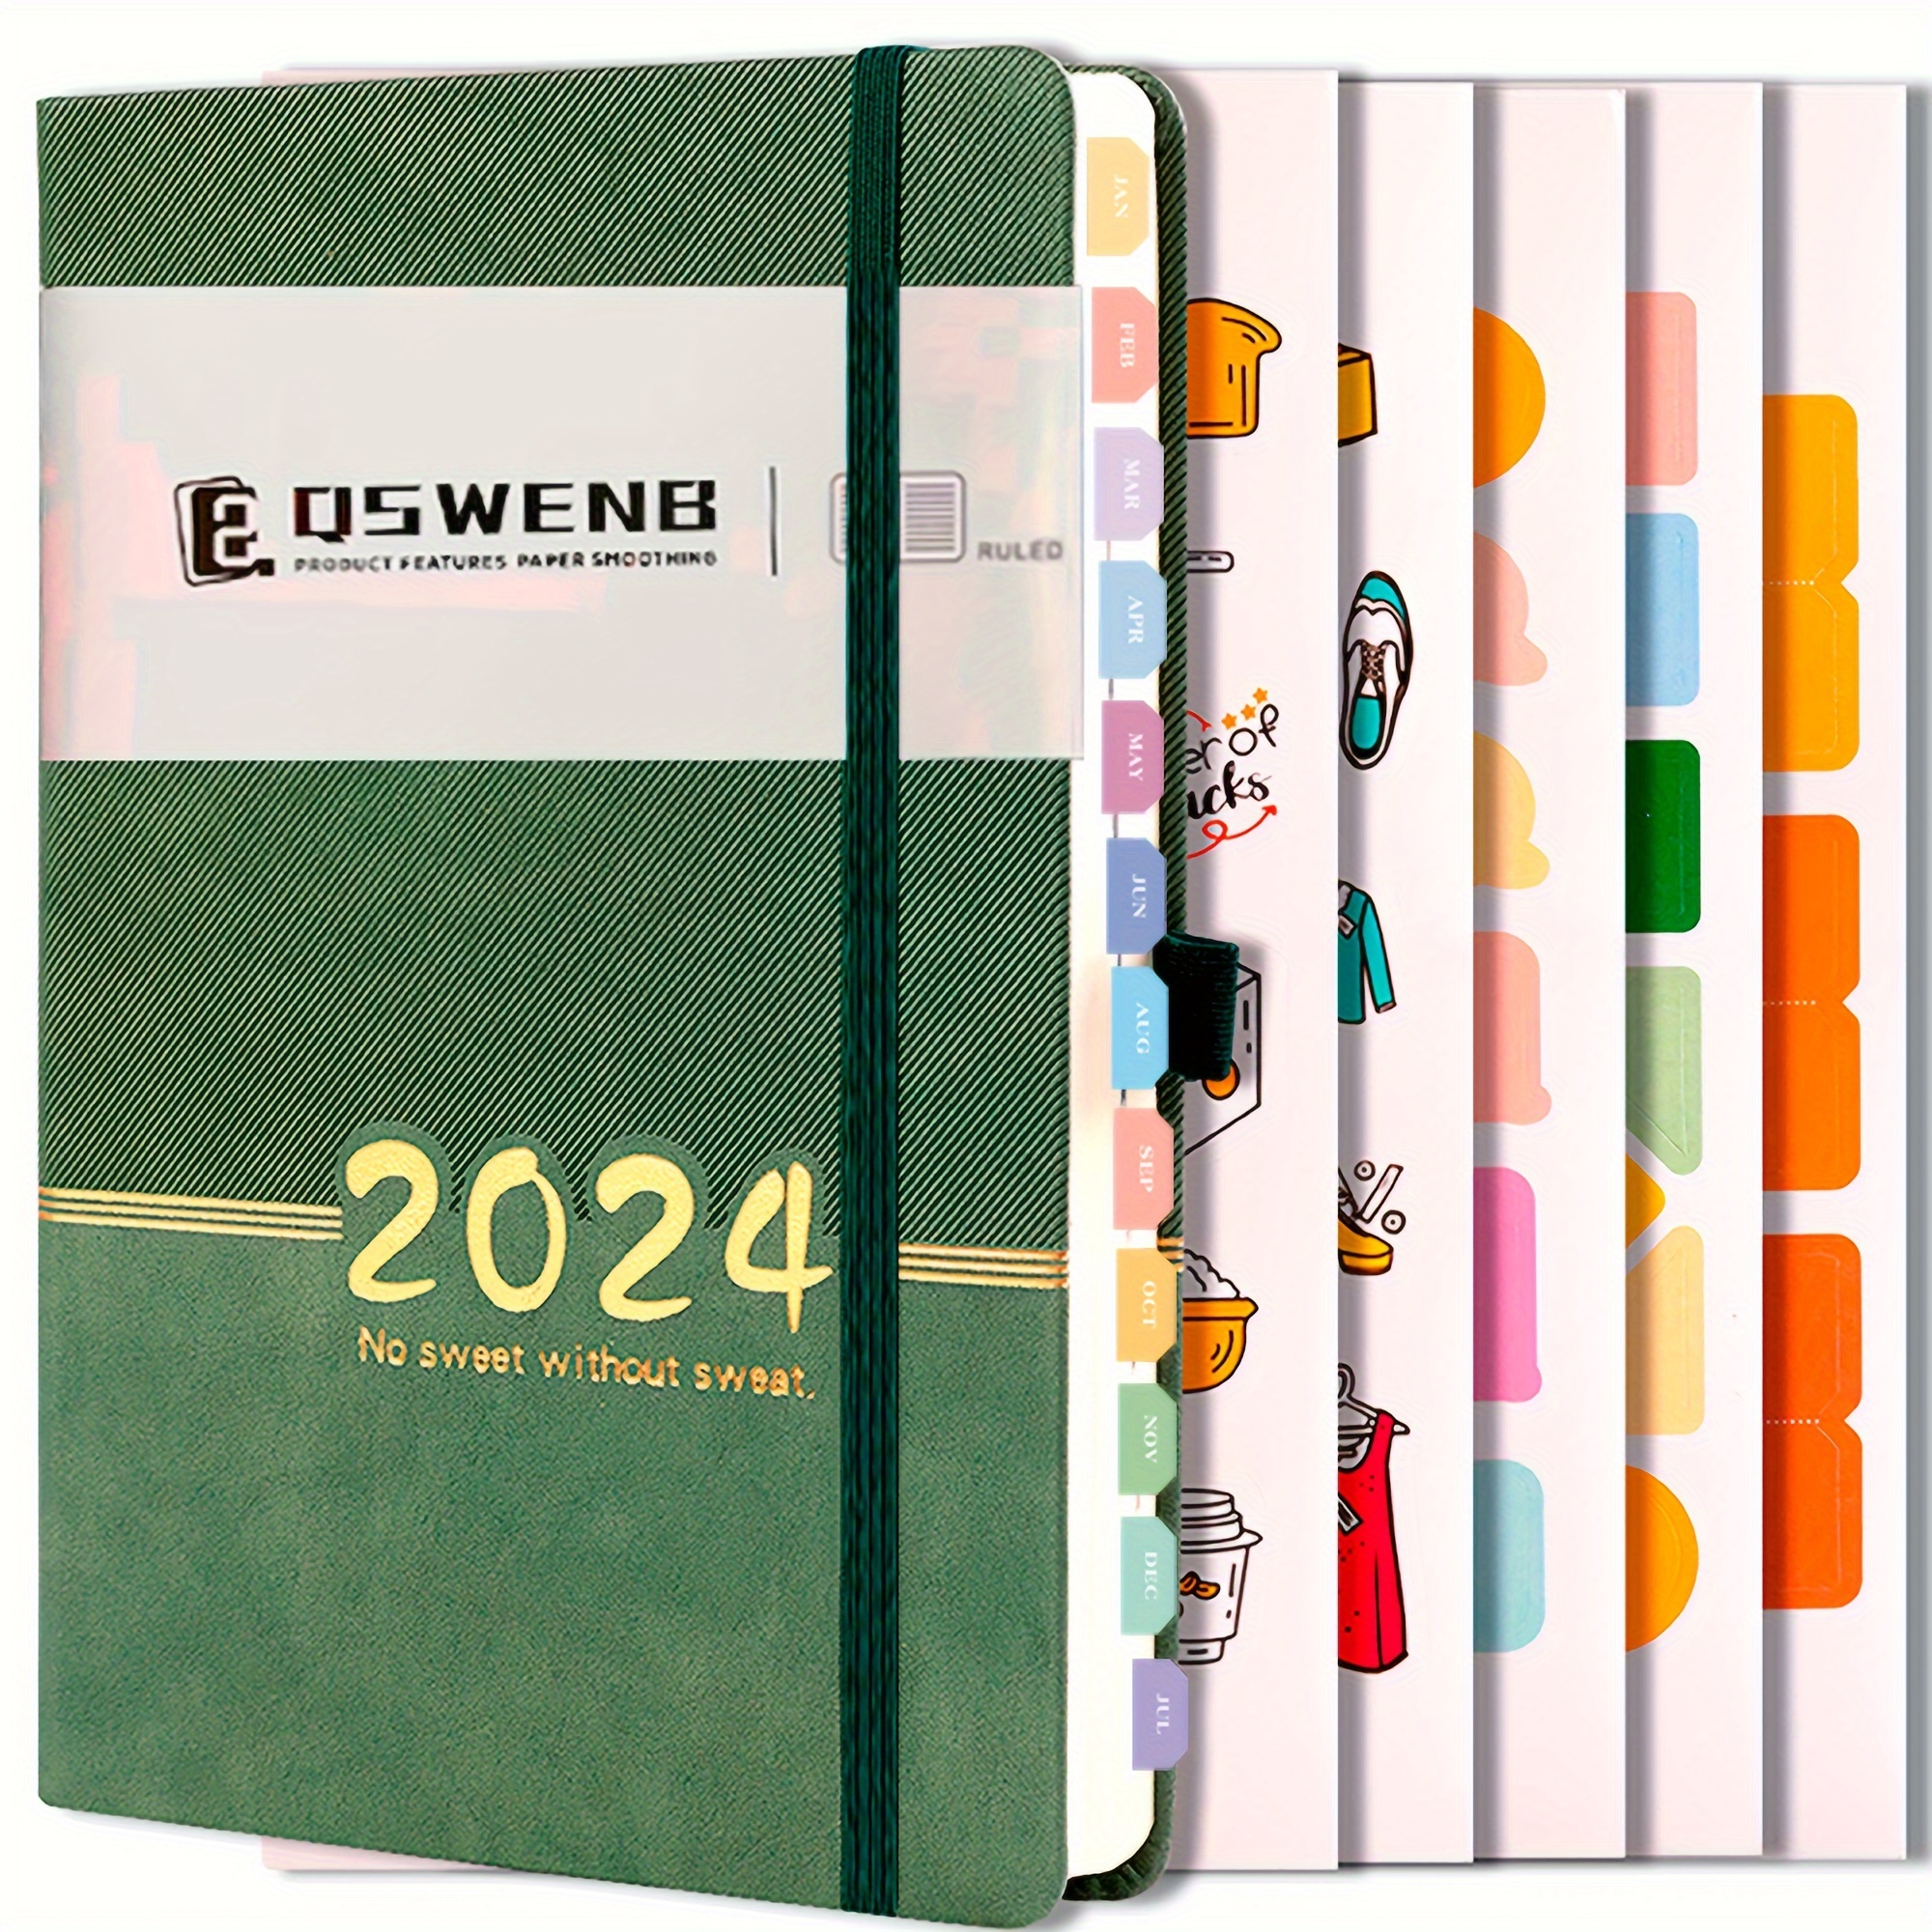 2024: Agenda 2024 journalier une page par jour - 365 jours ,Planificateur  un jour = une page ,avec planification mensuel |format A4 (French Edition)